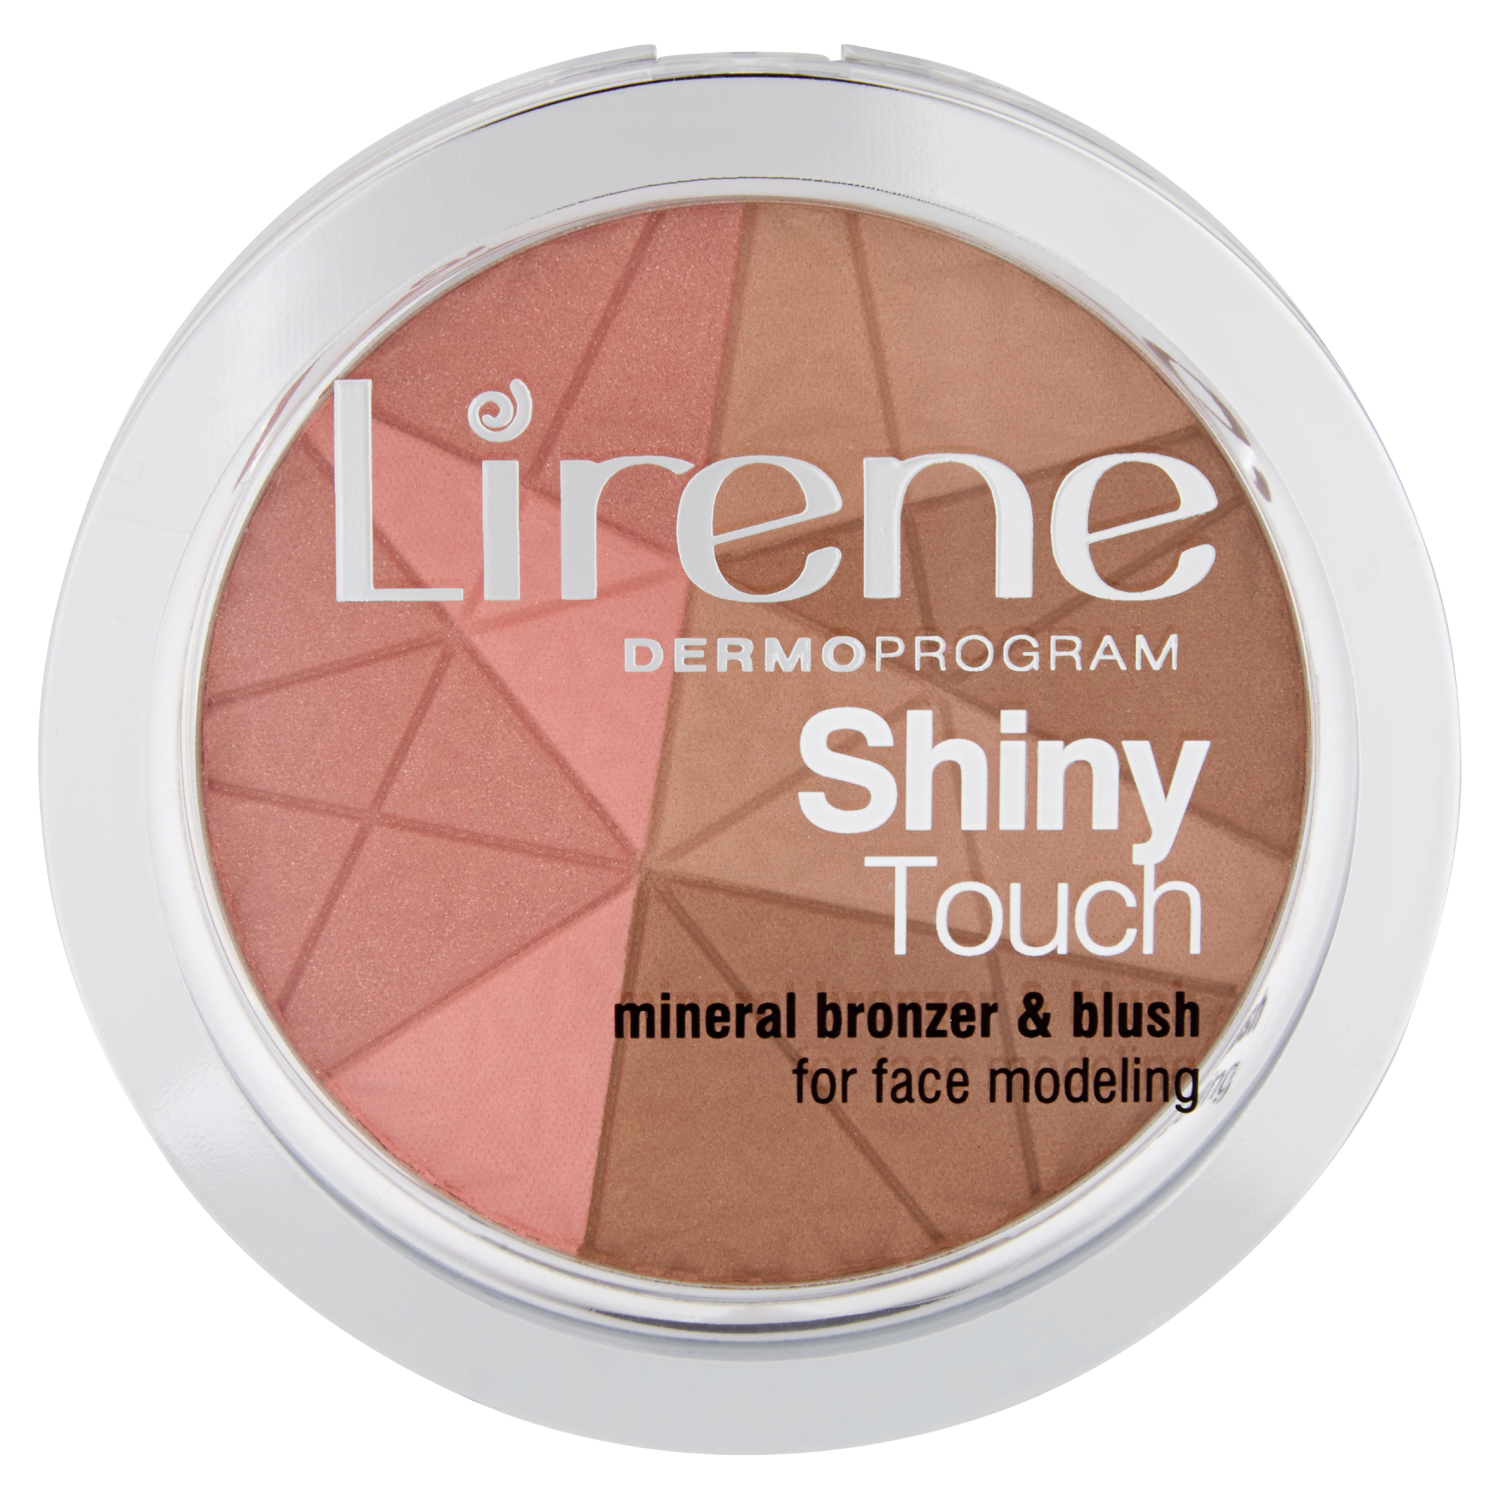 Lirene Shiny Touch бронзер с минеральными румянами в камне для моделирования овала лица, 9 г